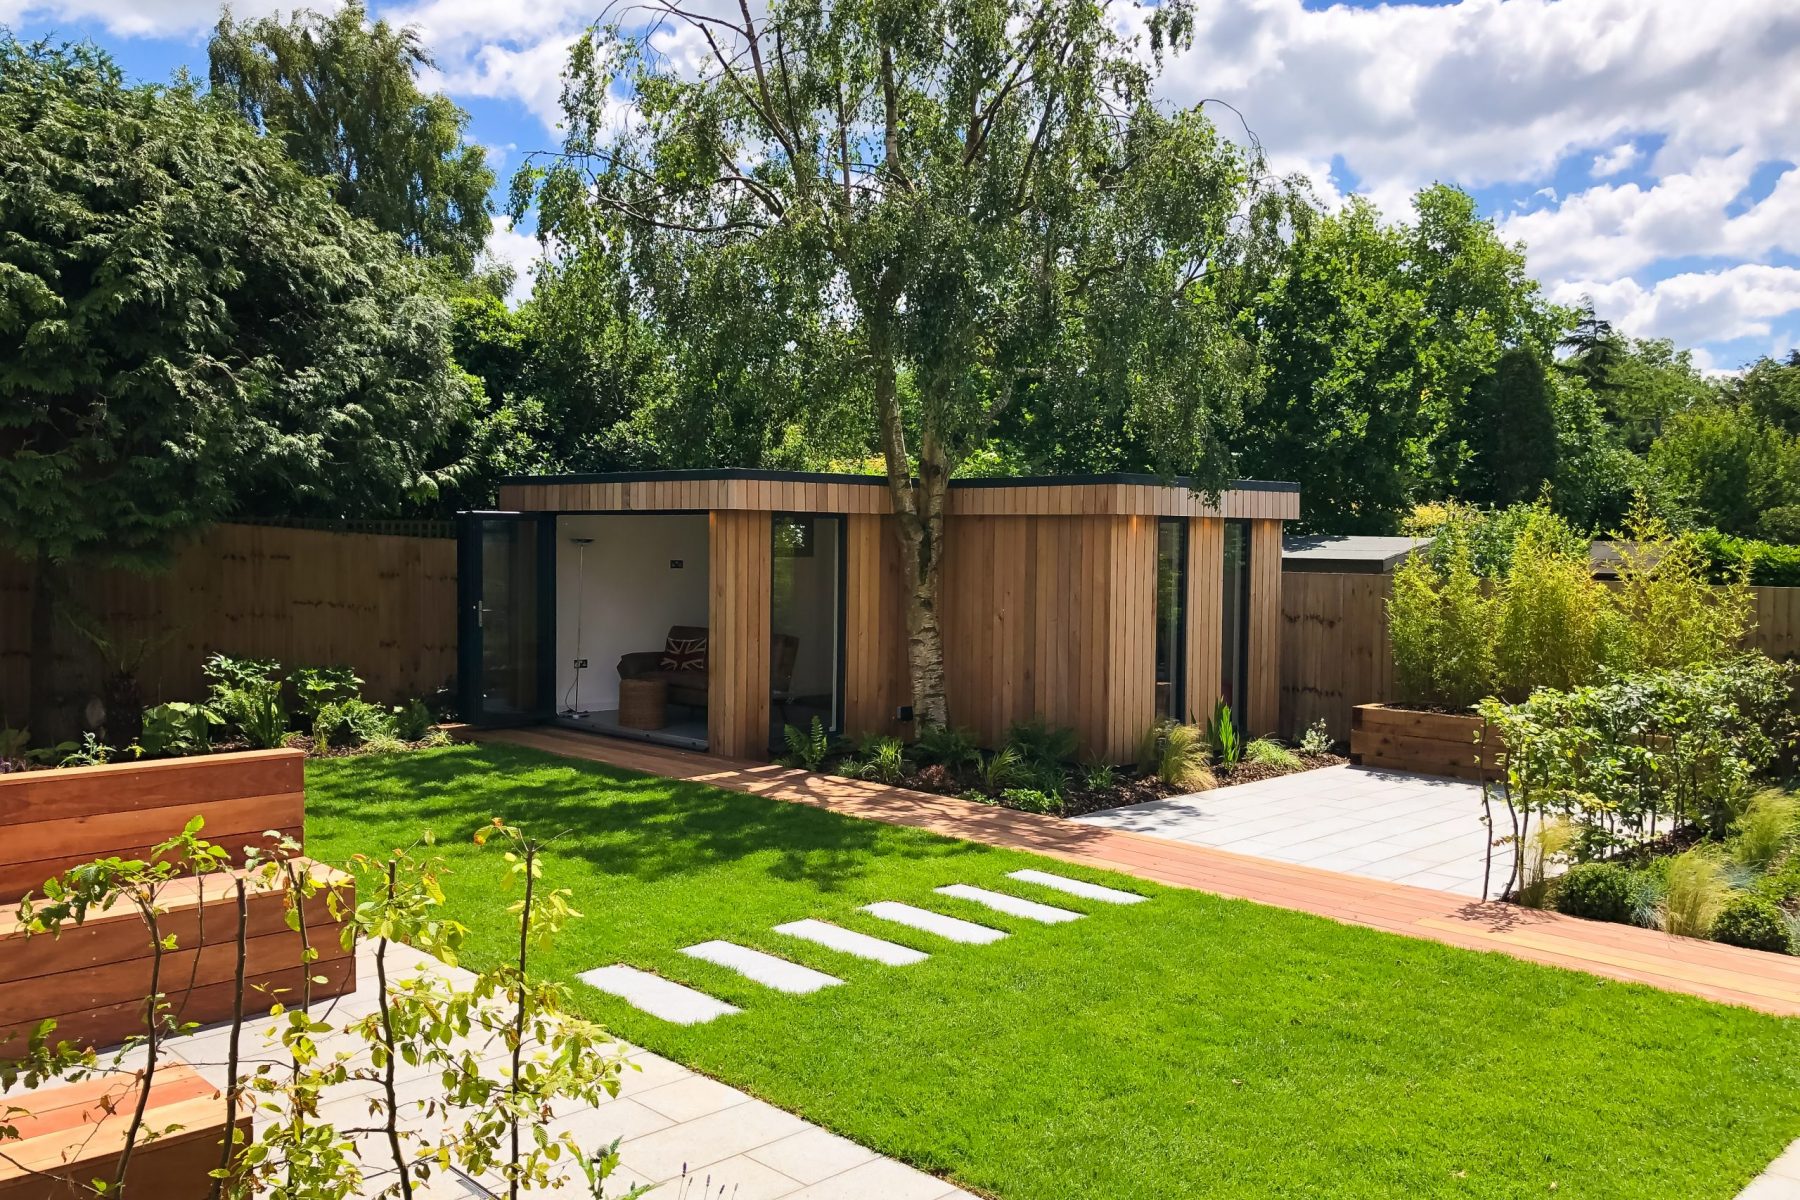 A Vivid Green garden studio – Space for play